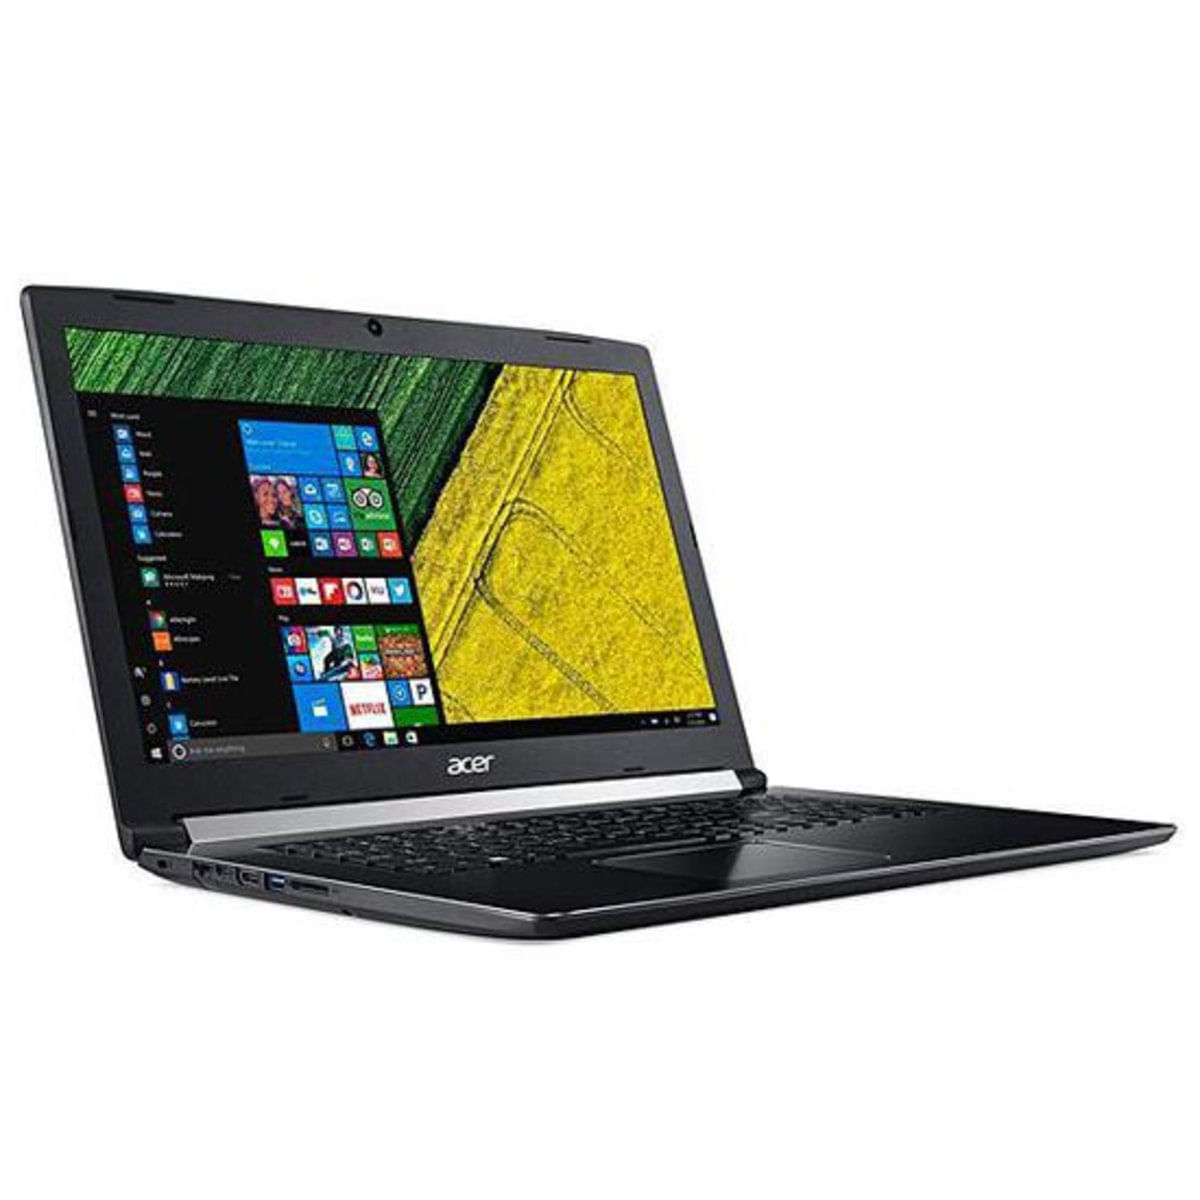 Notebook - Acer A517-51-57ss I5-7200u 2.50ghz 8gb 1tb Padrão Intel Hd Graphics Windows 10 Home Aspire 5 17,3" Polegadas